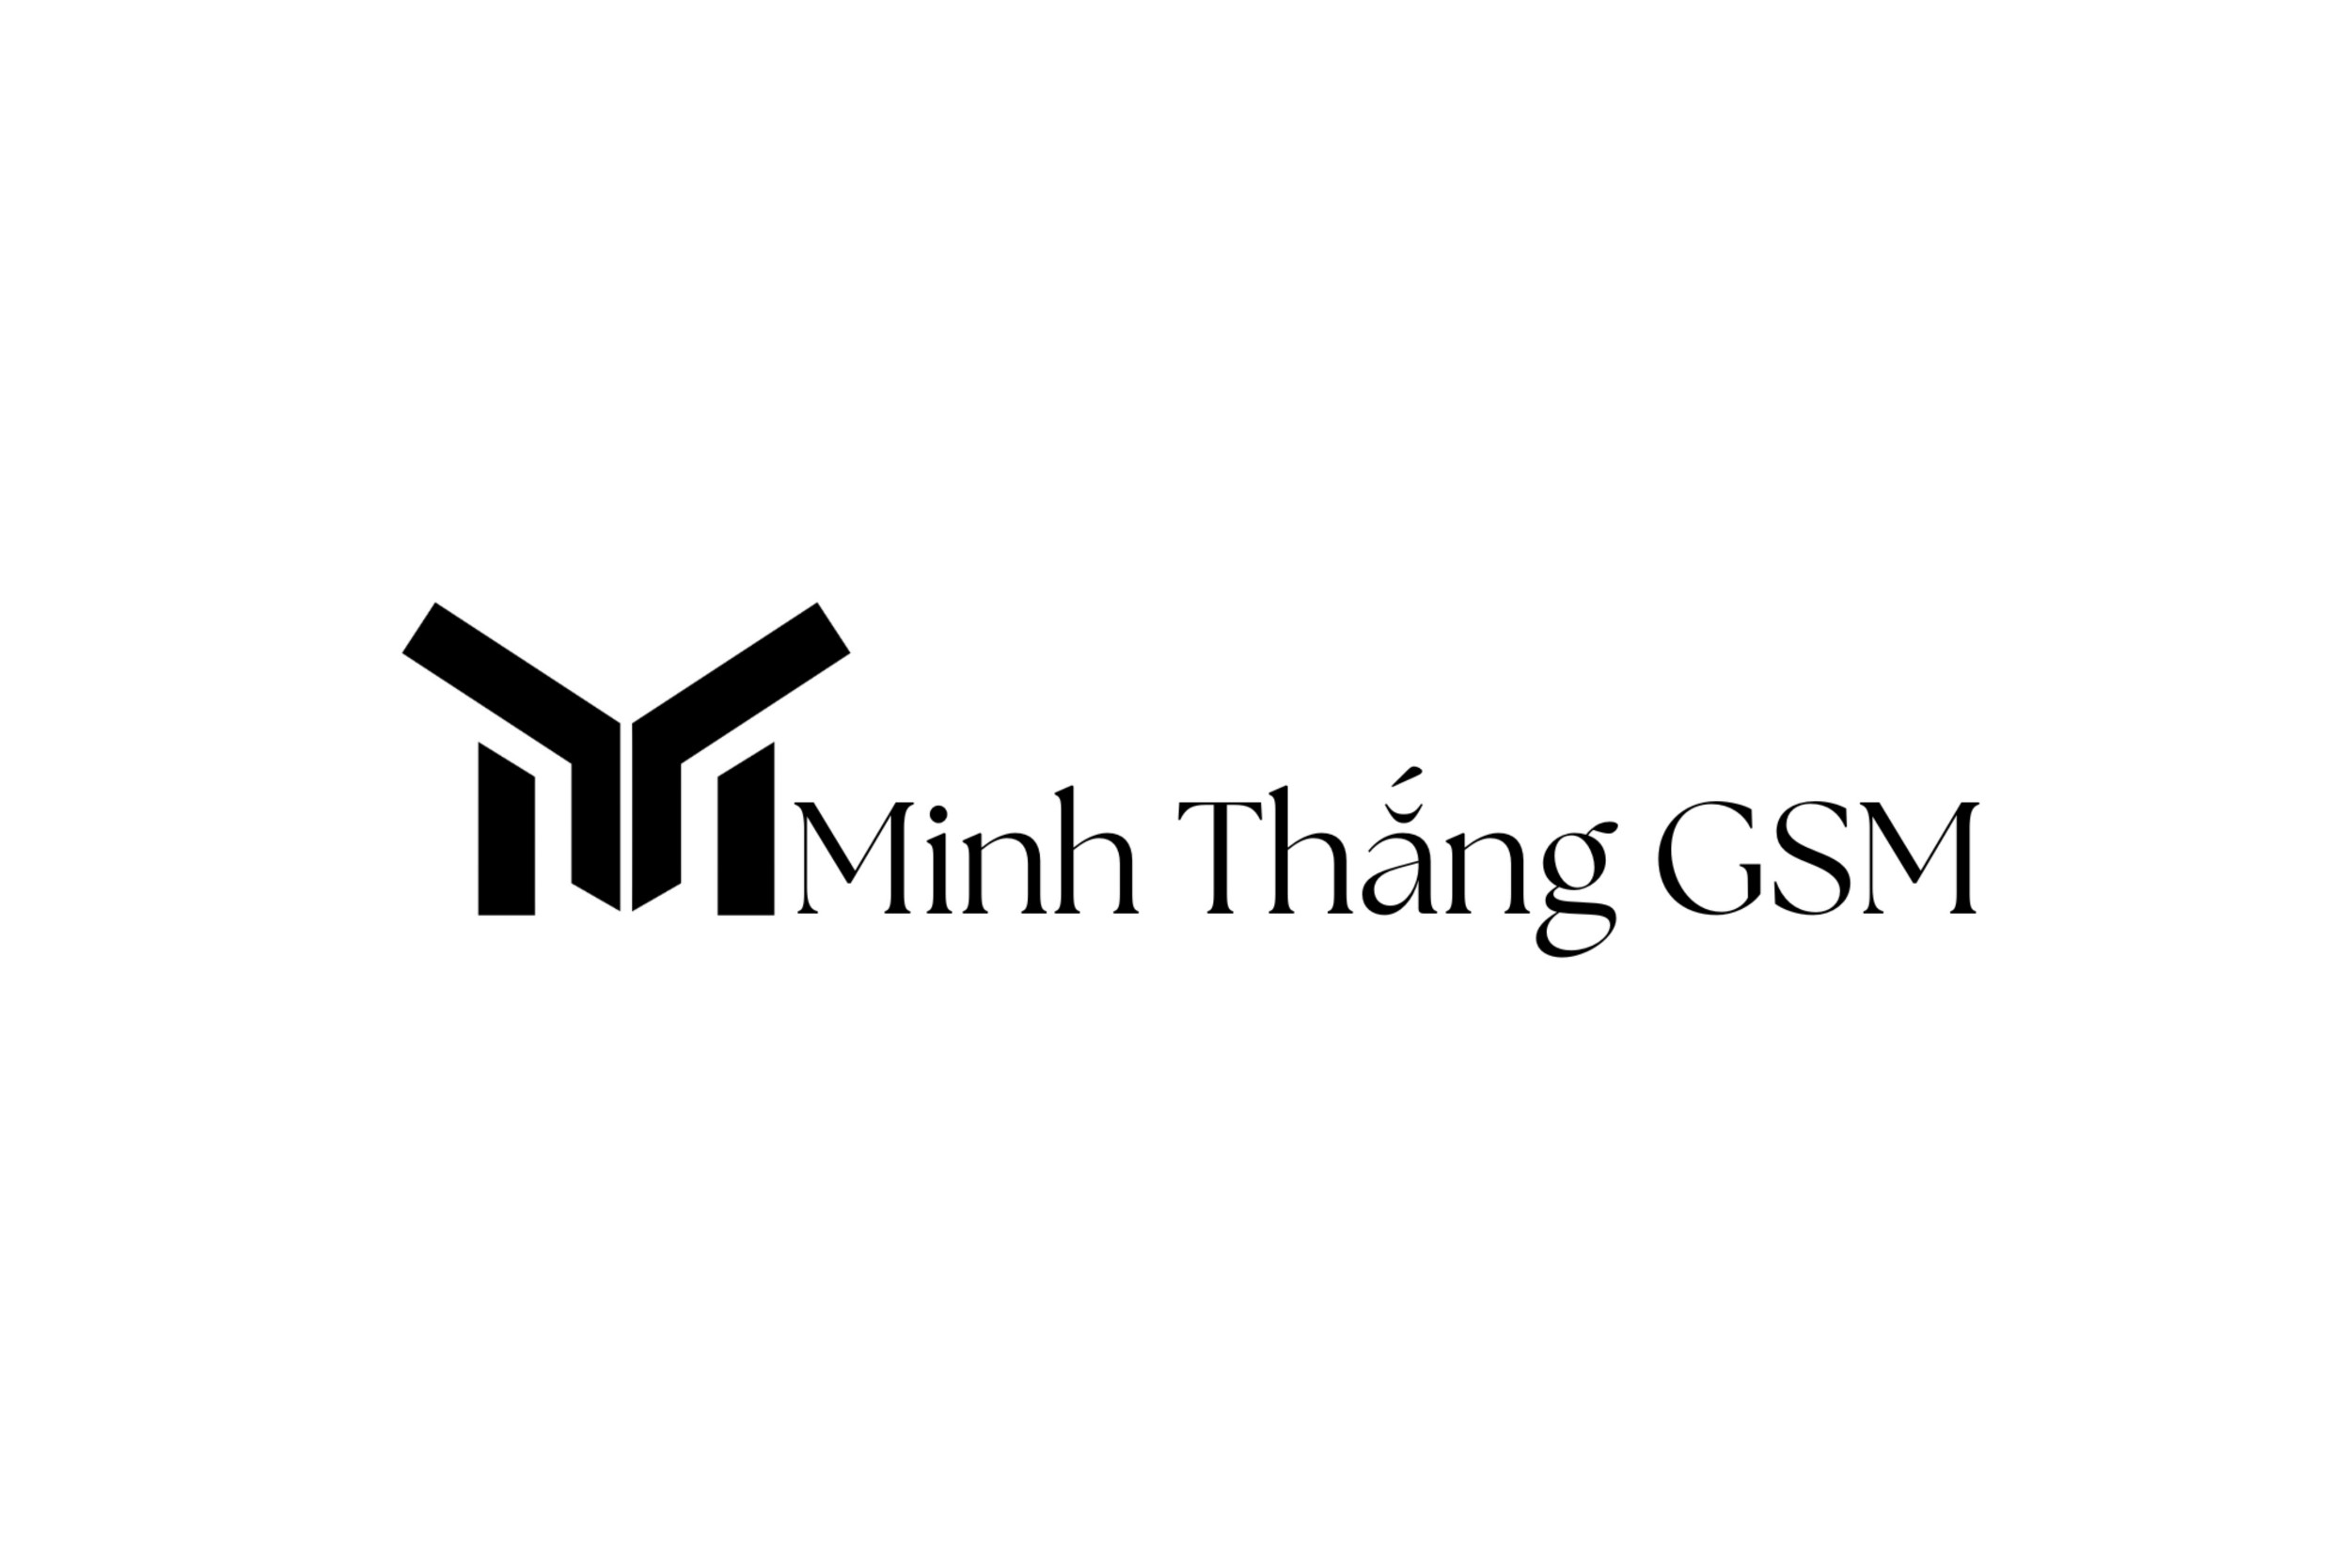 minh-thang-gsm-logo